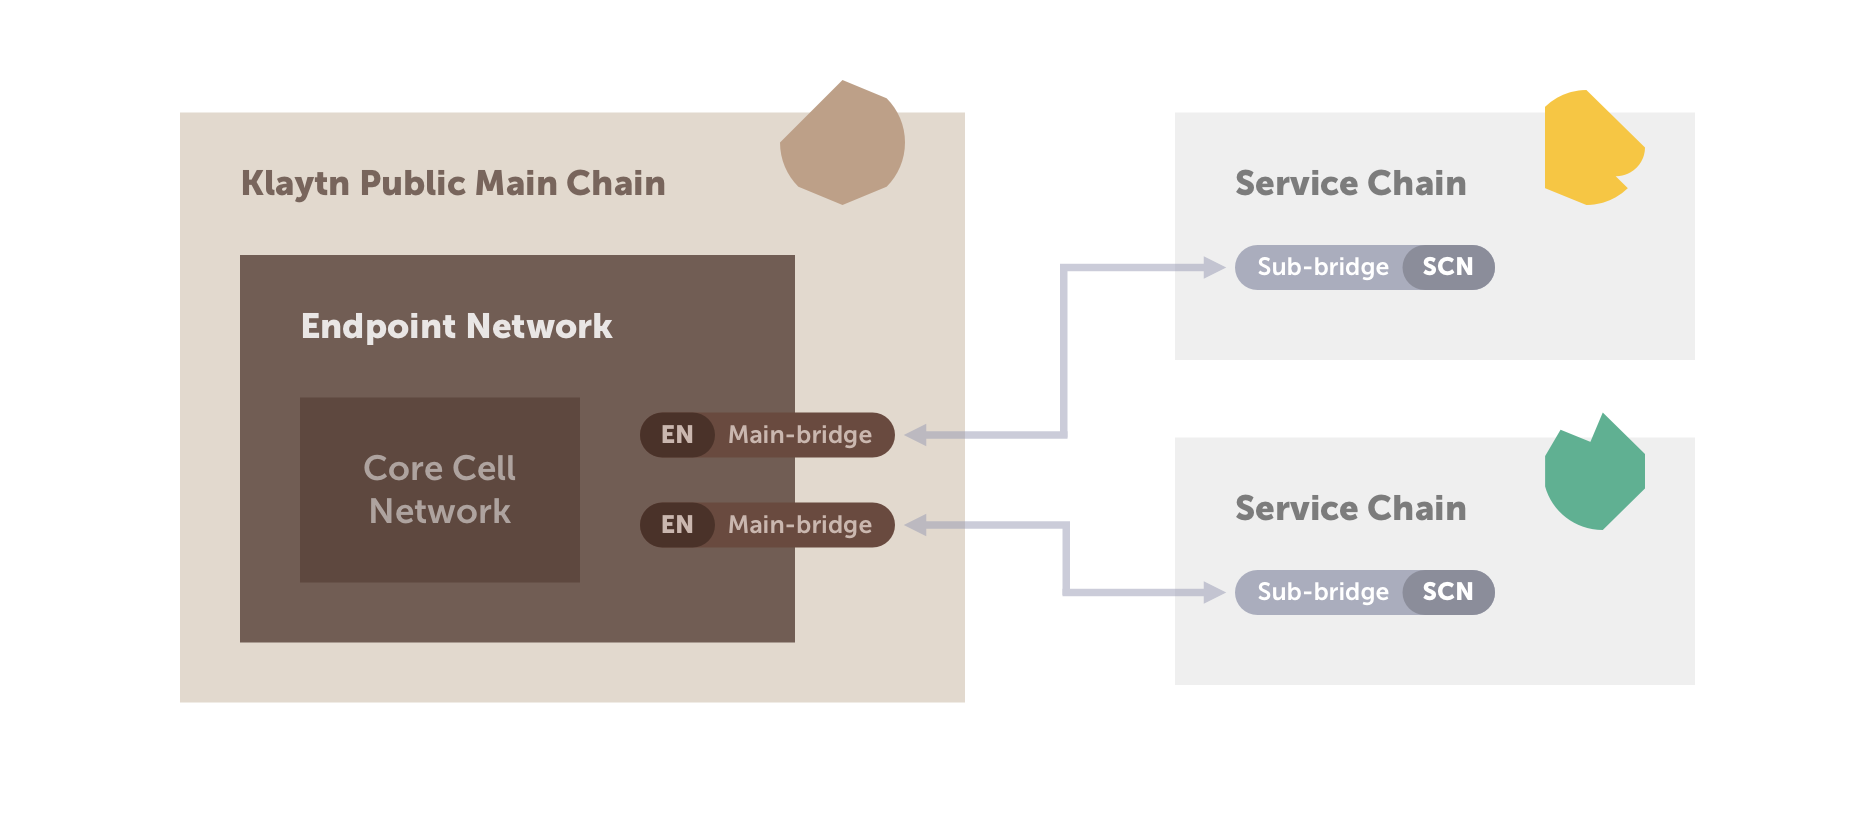 Hình 2. Kết nối giữa Chuỗi chính và Chuỗi dịch vụ sử dụng Mô hình cầu nối chính/cầu nối con